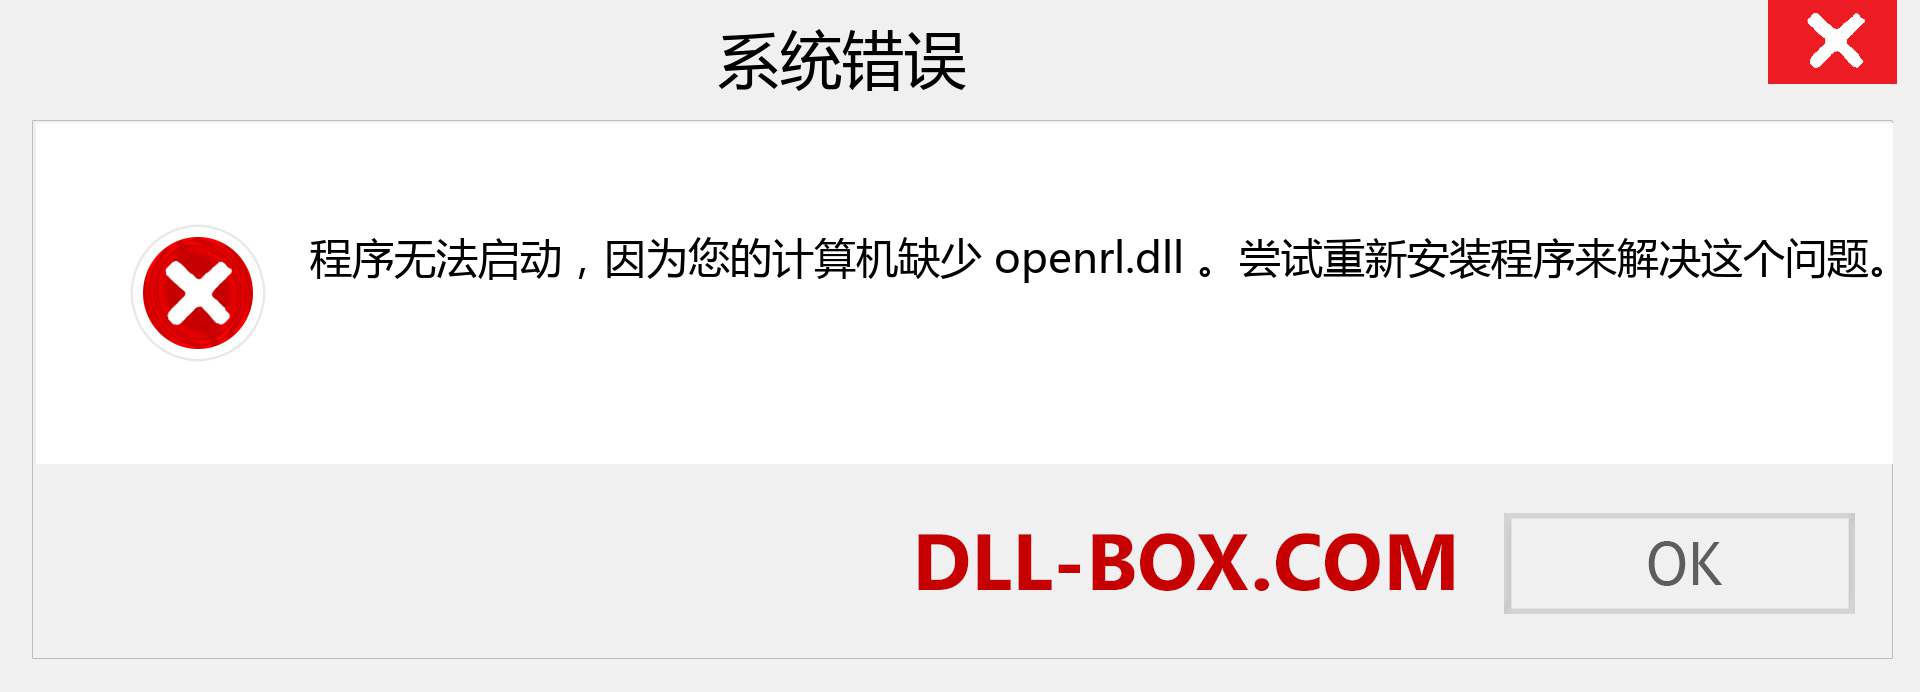 openrl.dll 文件丢失？。 适用于 Windows 7、8、10 的下载 - 修复 Windows、照片、图像上的 openrl dll 丢失错误